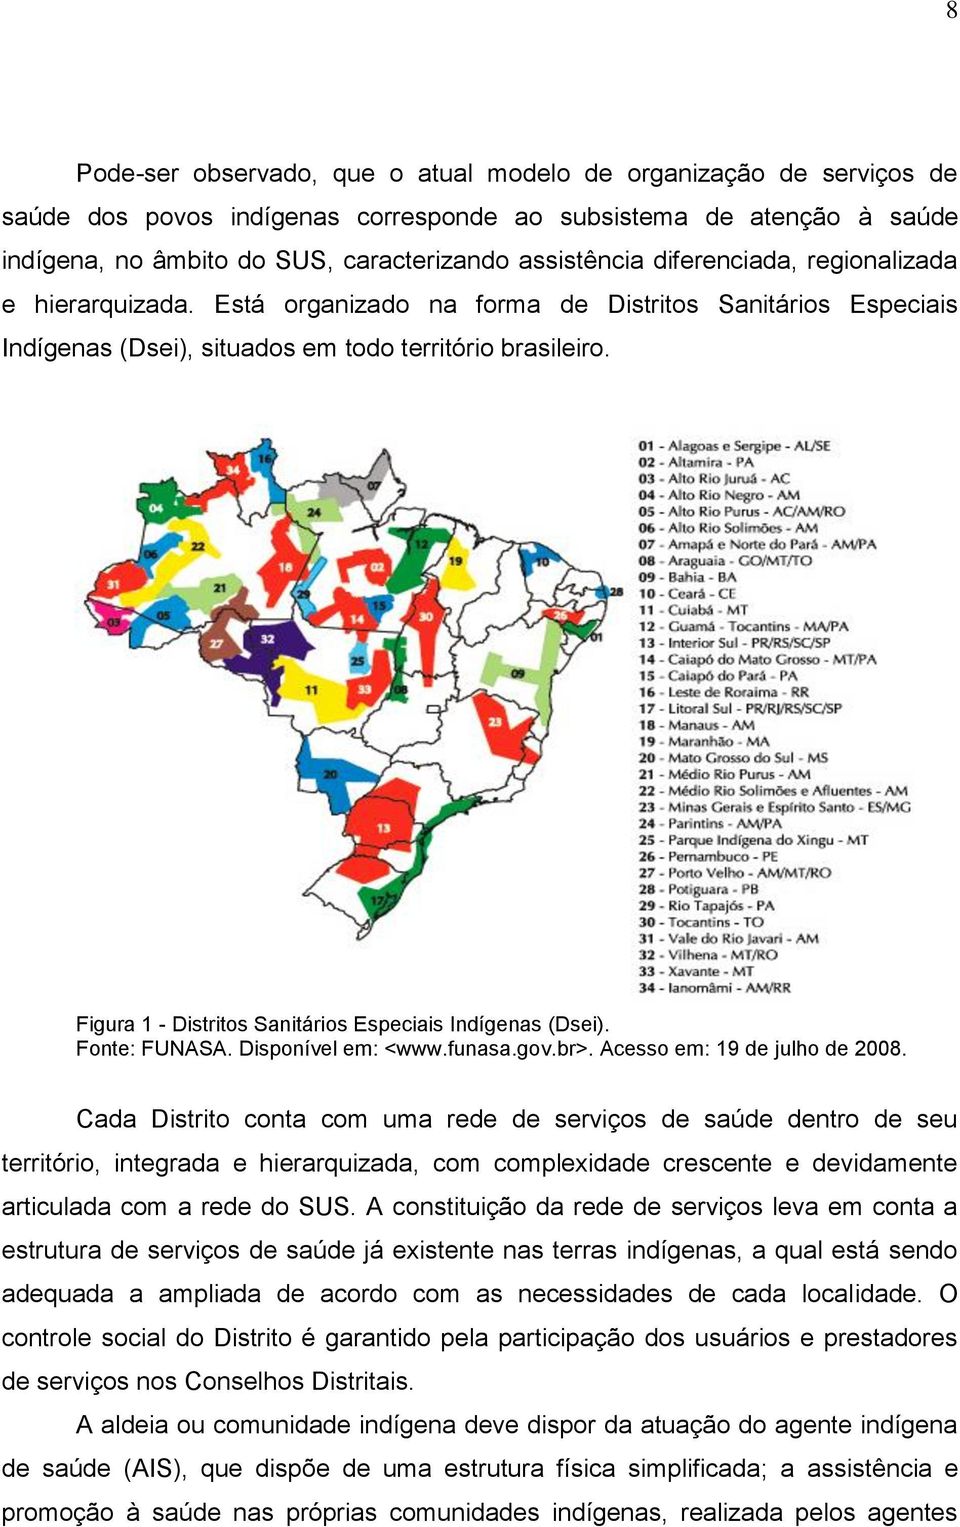 Figura 1 - Distritos Sanitários Especiais Indígenas (Dsei). Fonte: FUNASA. Disponível em: <www.funasa.gov.br>. Acesso em: 19 de julho de 2008.